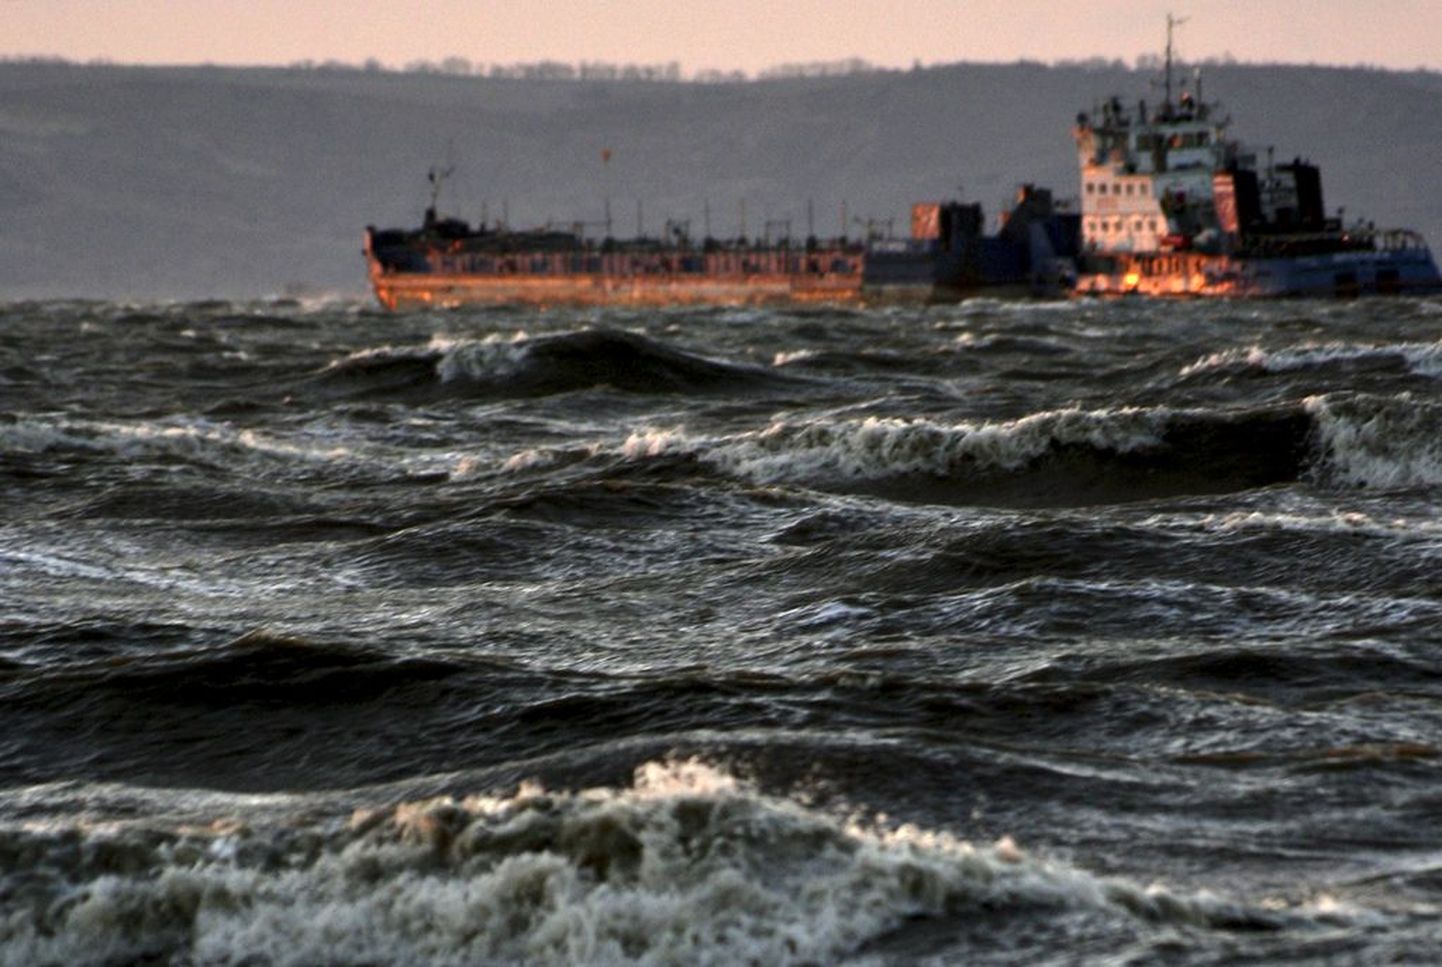 Rahutul merel õõtsuv kaubalaev Kavkazi sadama lähedal. Foto on illustreeriv.